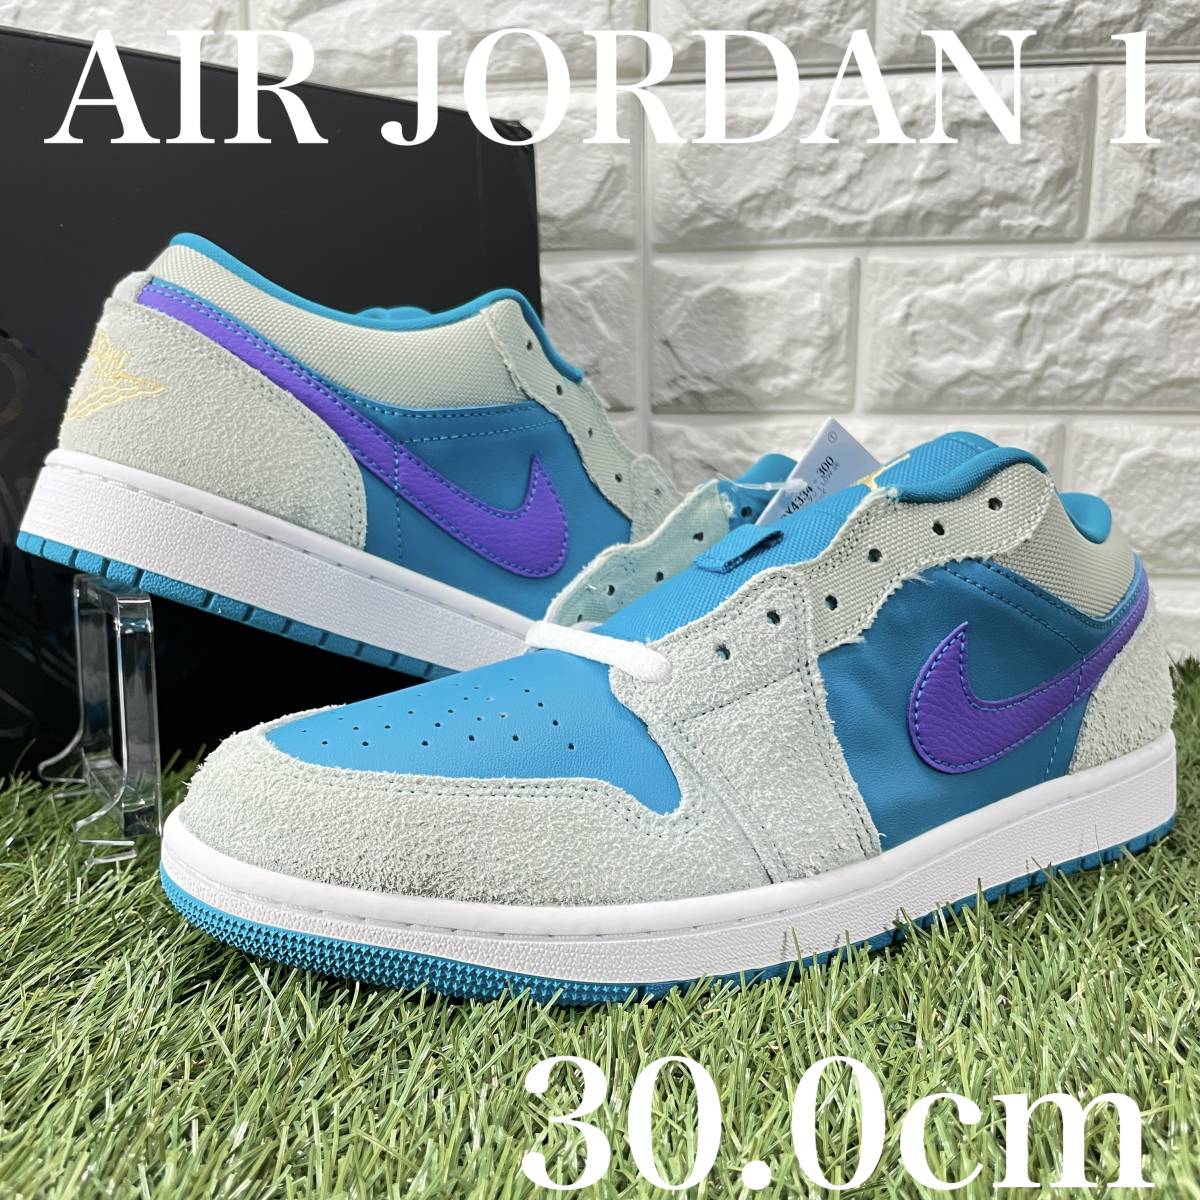 即決 ナイキ エアジョーダン1 ロー SE Nike Air Jordan 1 Low SE メンズモデル 30.0cm 送料込み DX4334-300